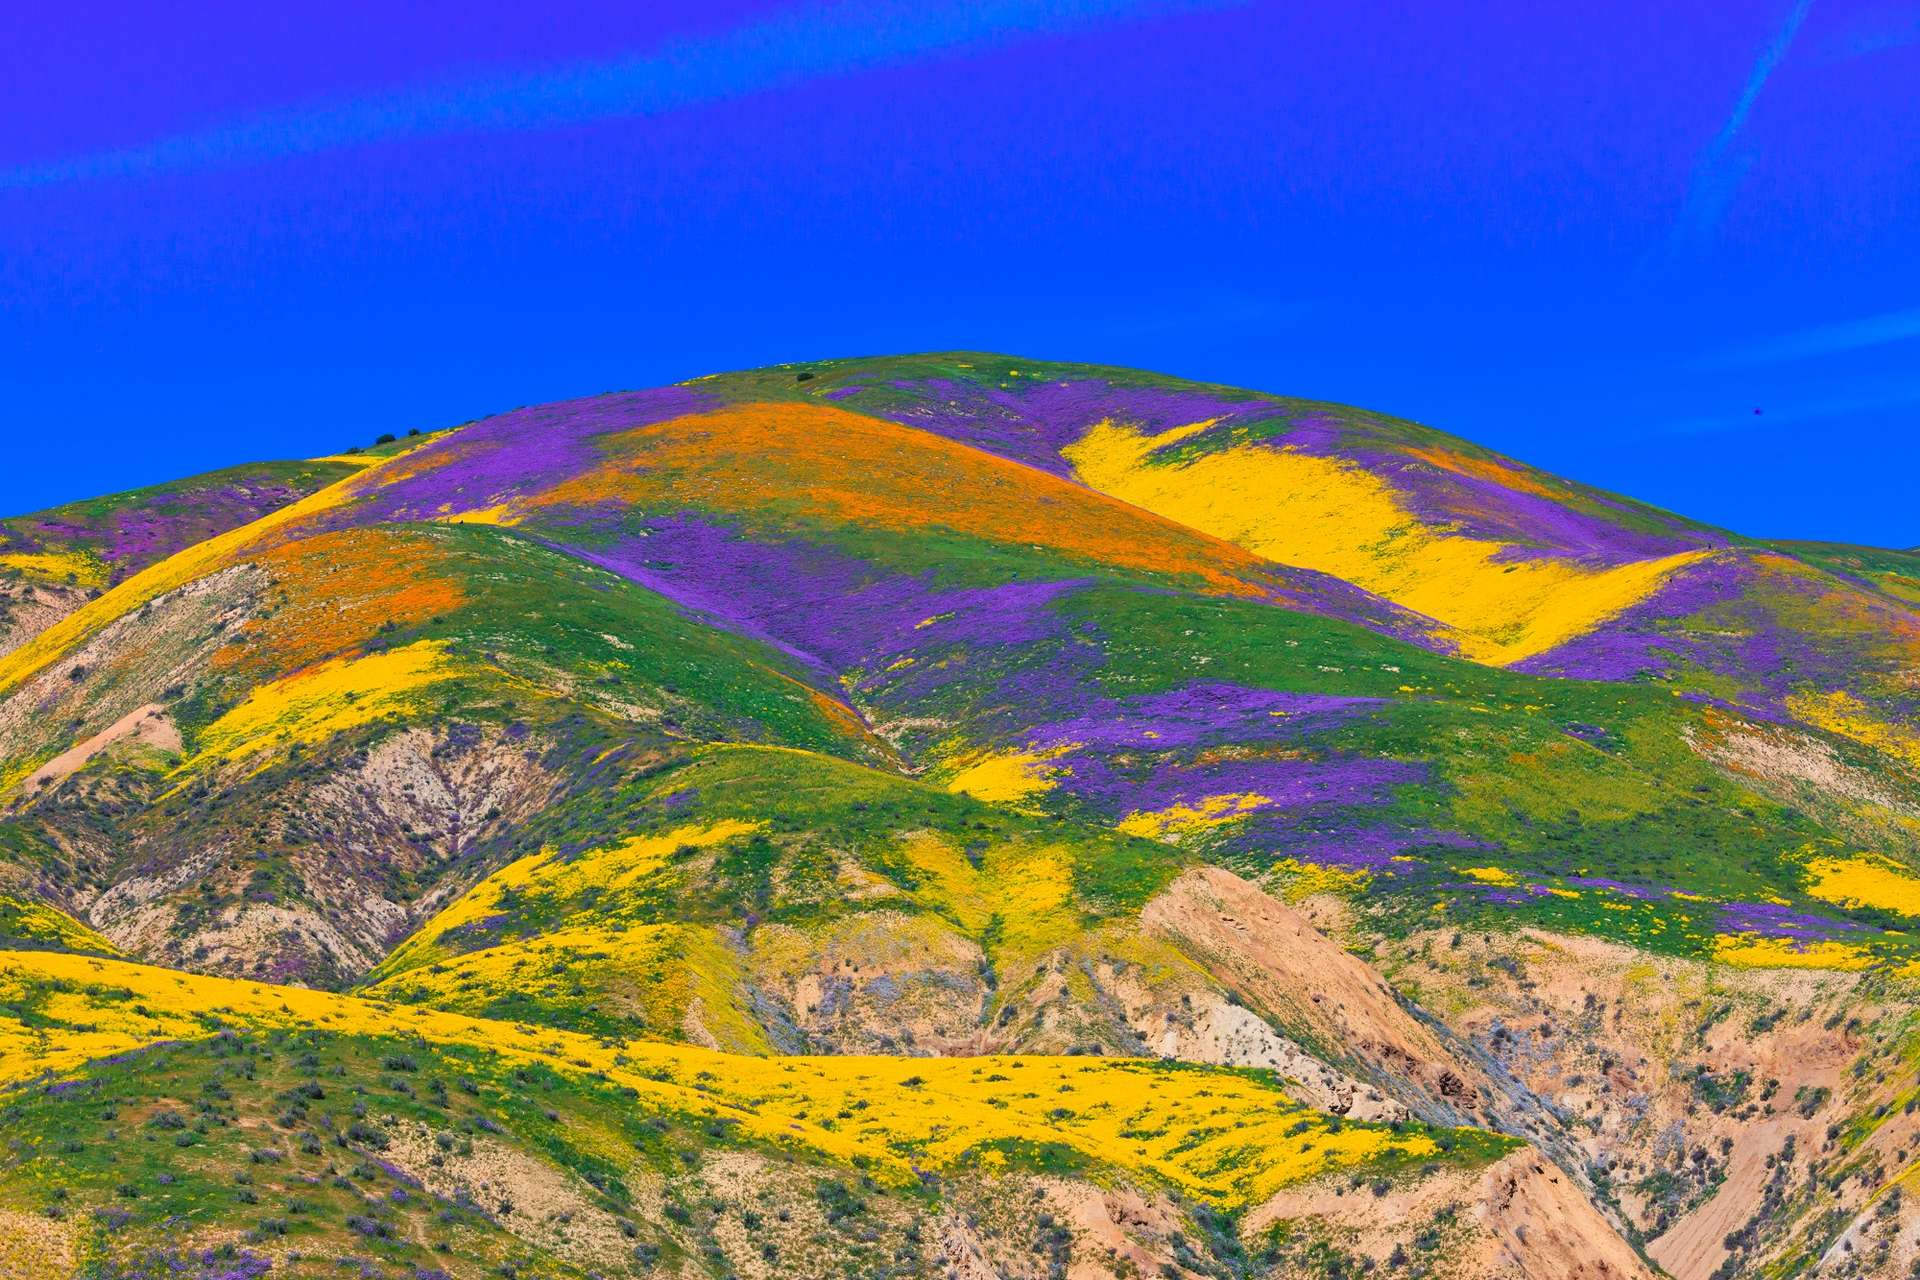 Spectacle rare et merveilleux des tapis de fleurs dans les déserts de Californie et de l’Arizona